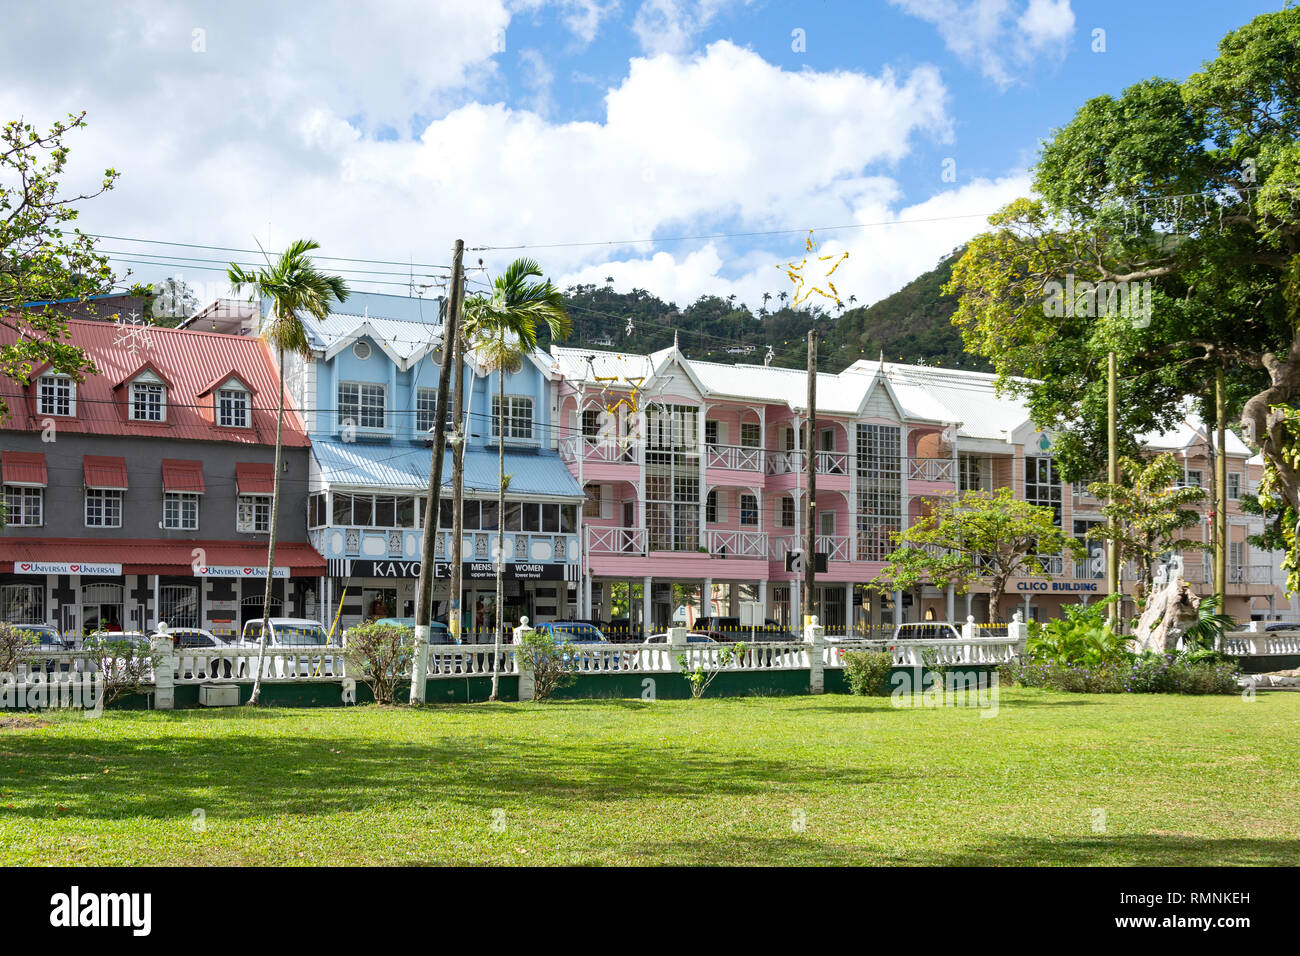 Im französischen Stil, historischen Gebäude aus Holz von Derek Walcott Square, Castries, St. Lucia, Kleine Antillen, Karibik Stockfoto